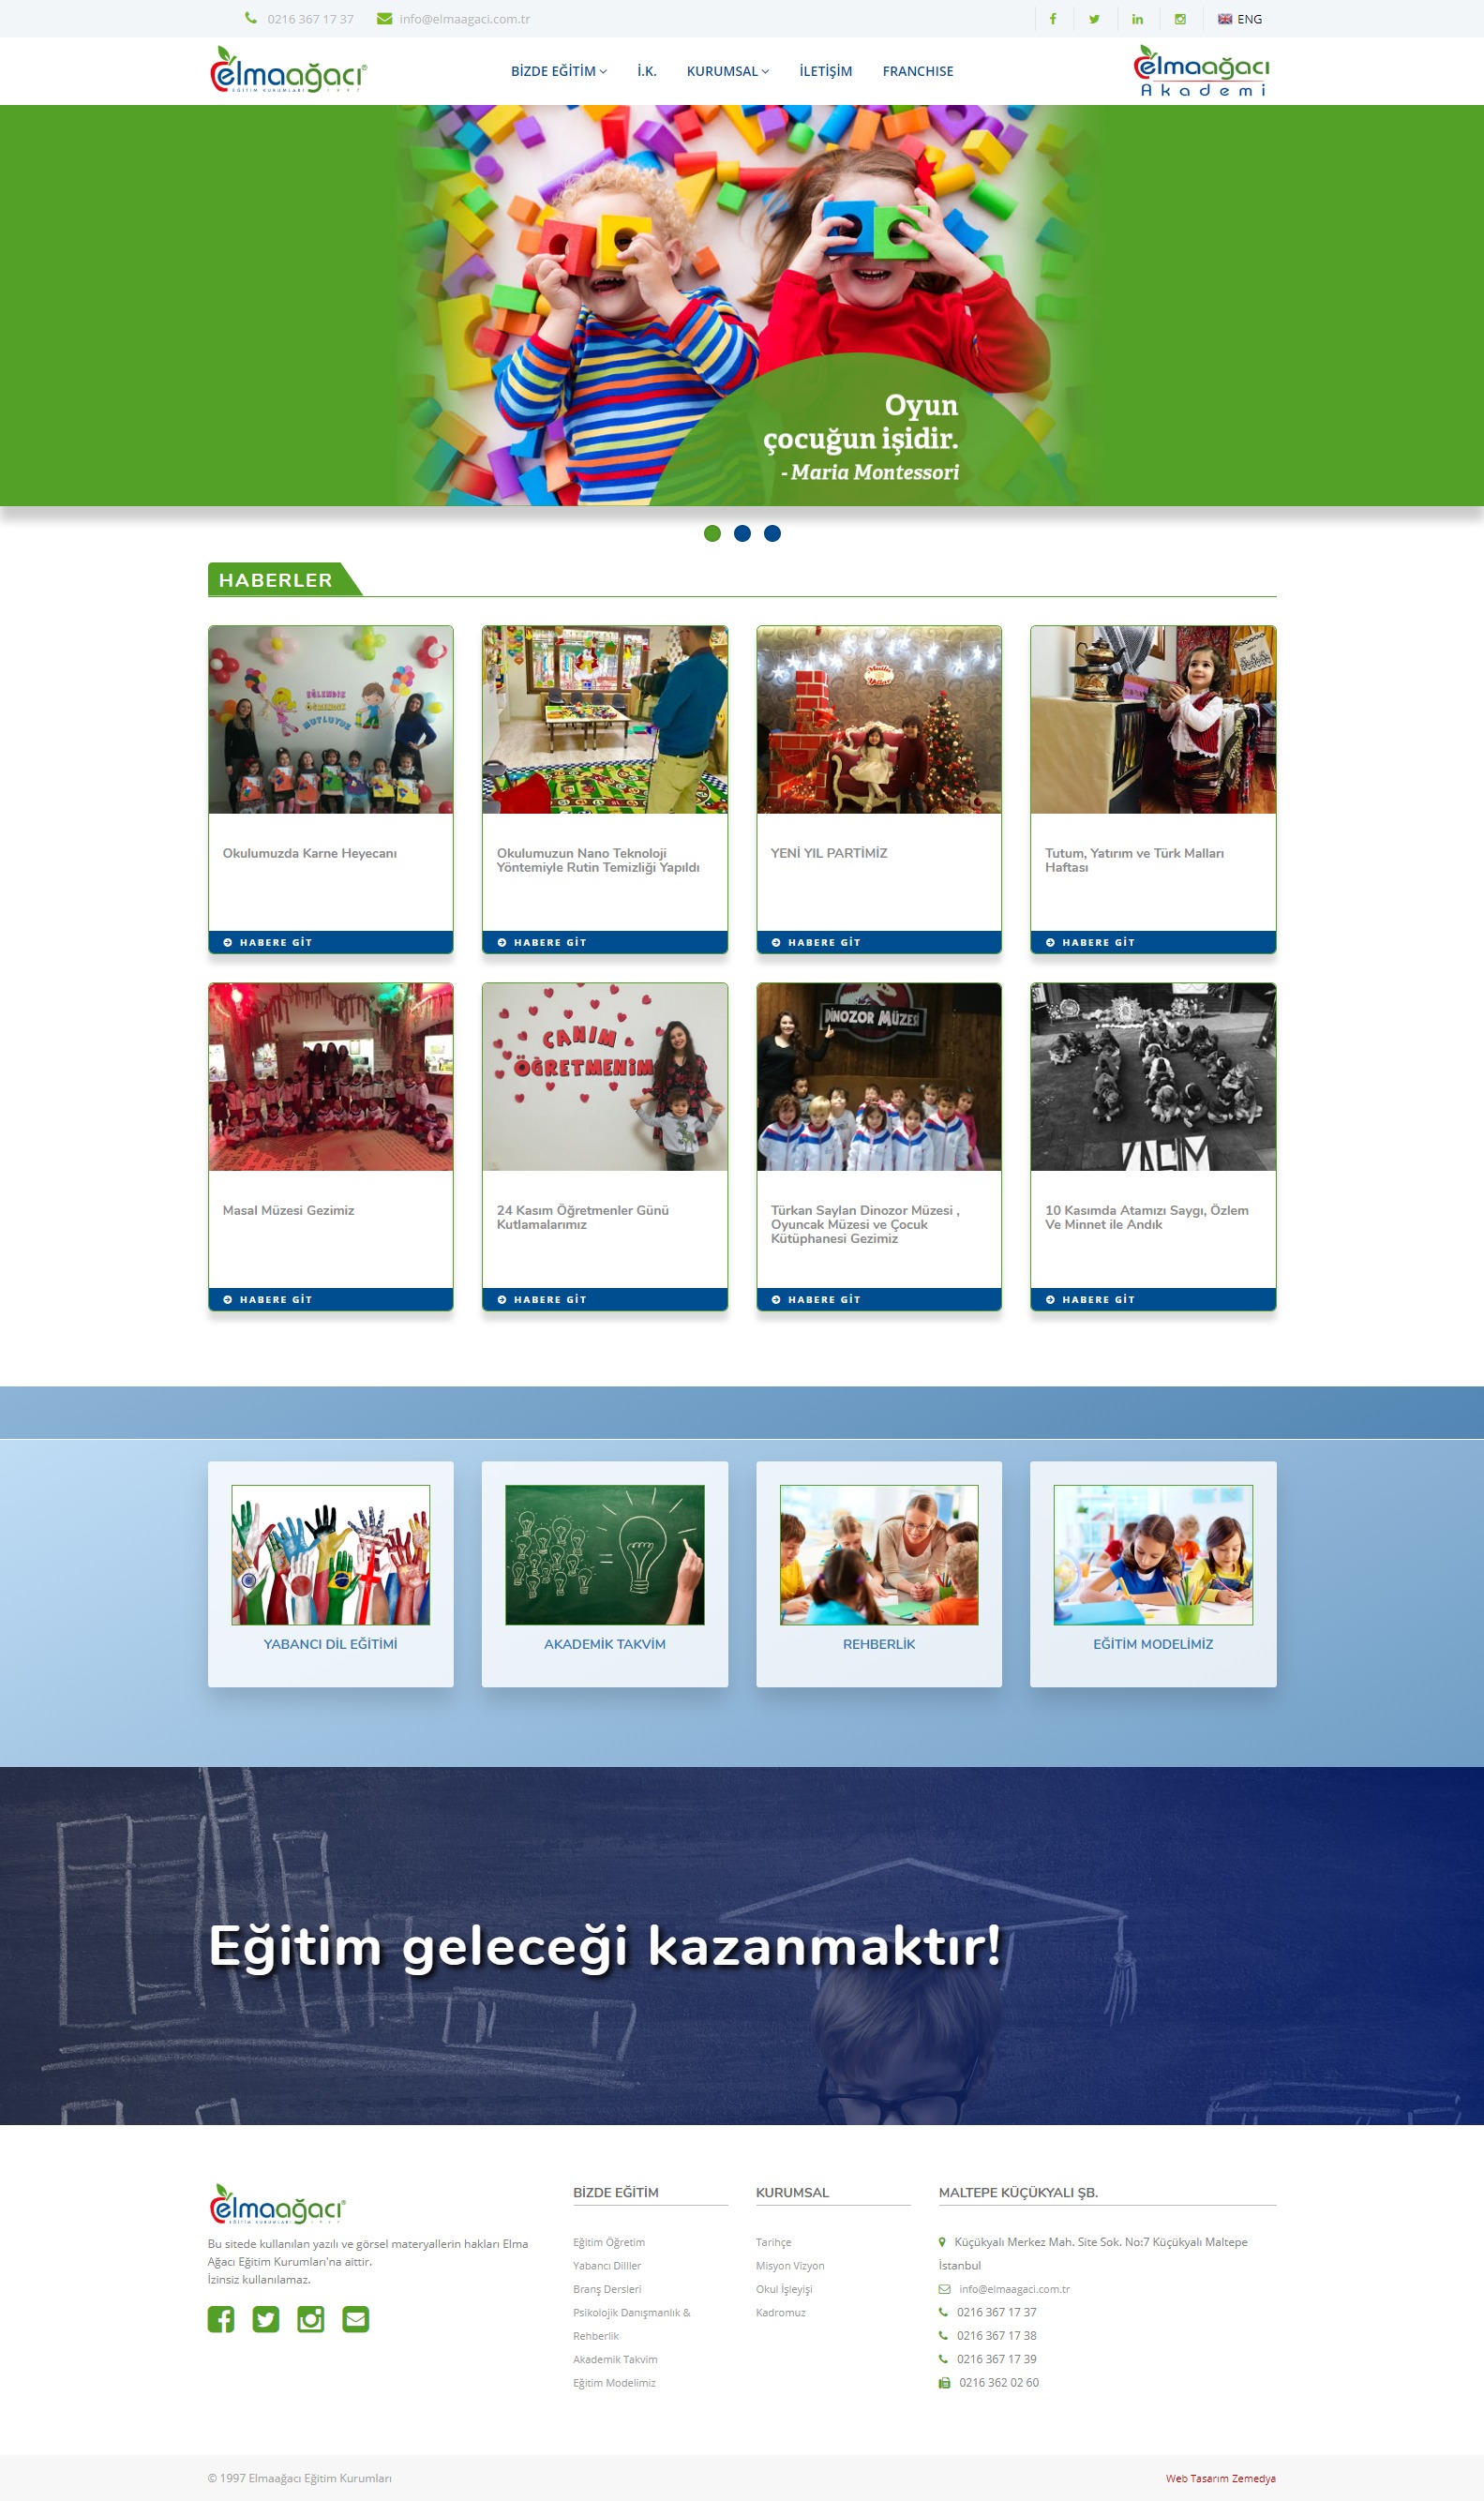 Elmaağacı Anaokulu için kurumsal profesyonel web site tasarımı küçükyalı maltepe tuzla İstanbul